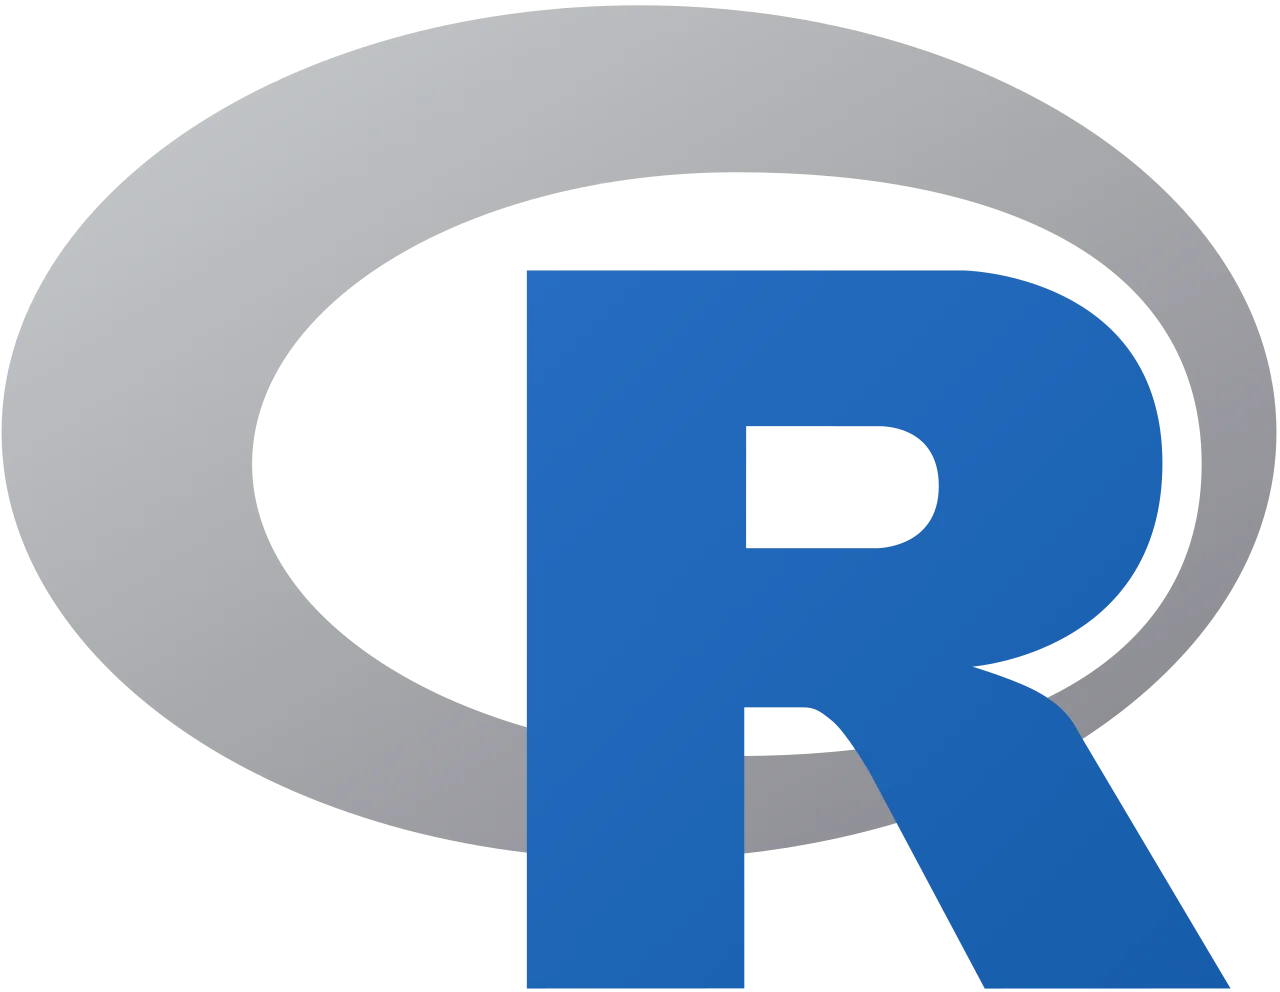 R-icon